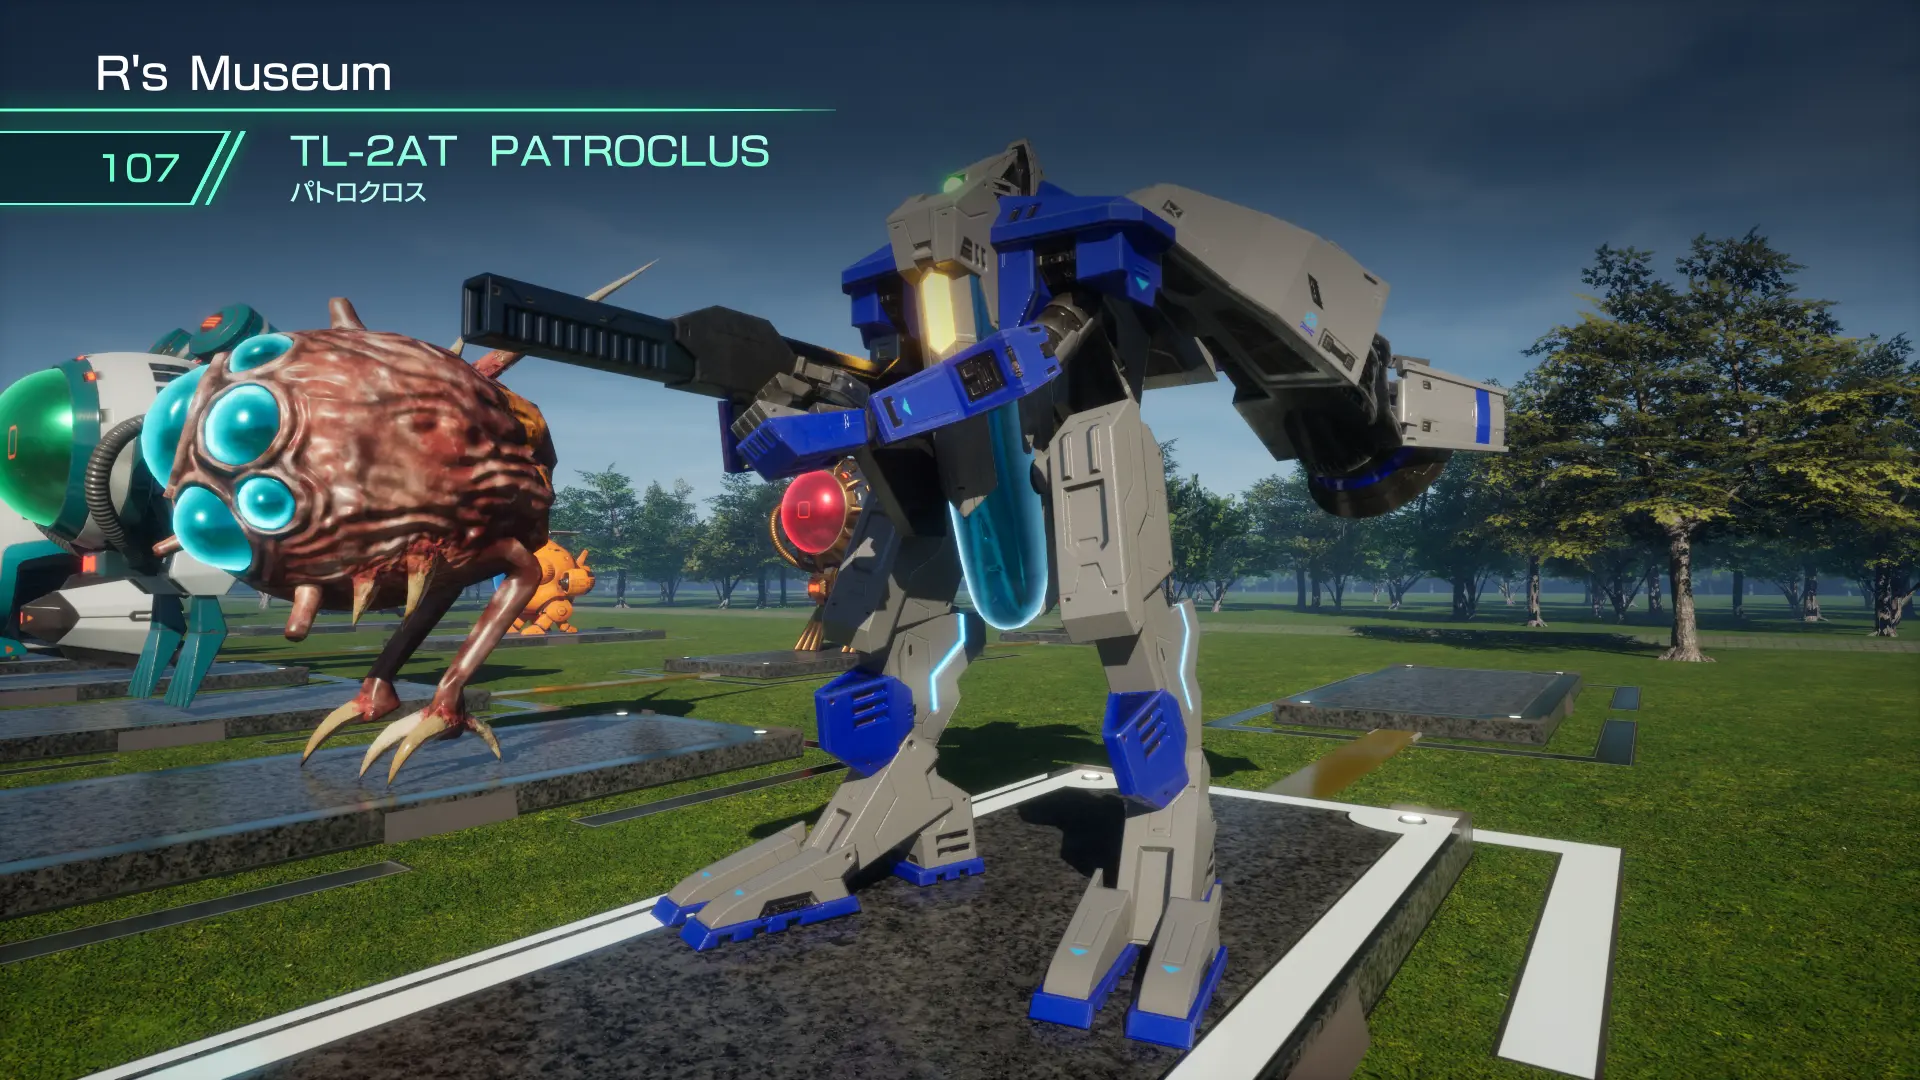 TL-2AT: PATROCLUS